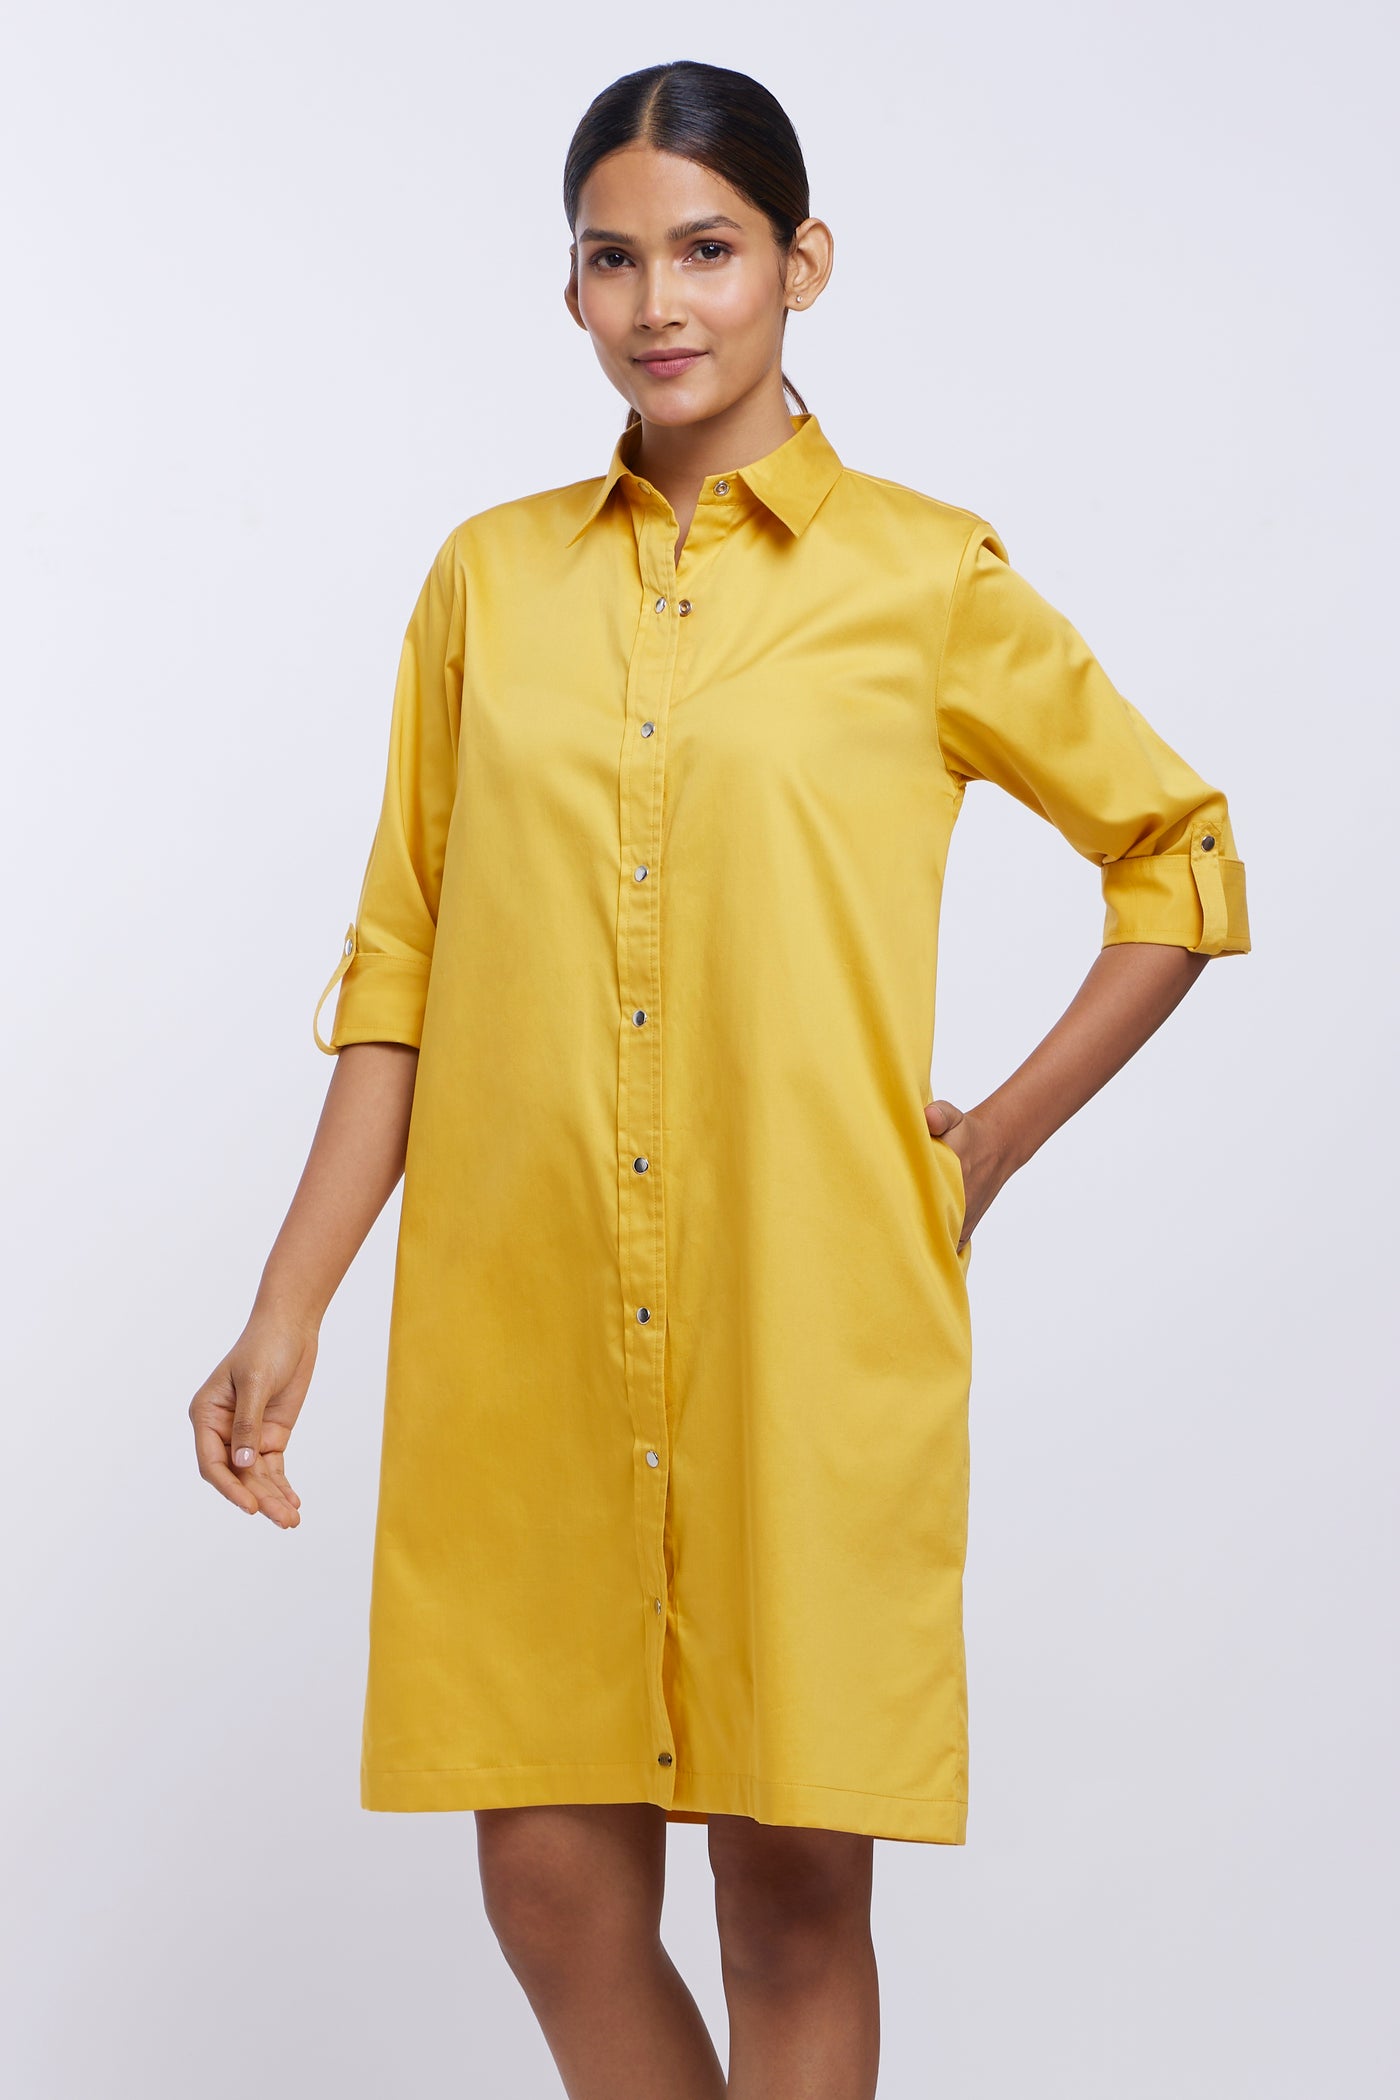 Canary Yellow Shirt Dress